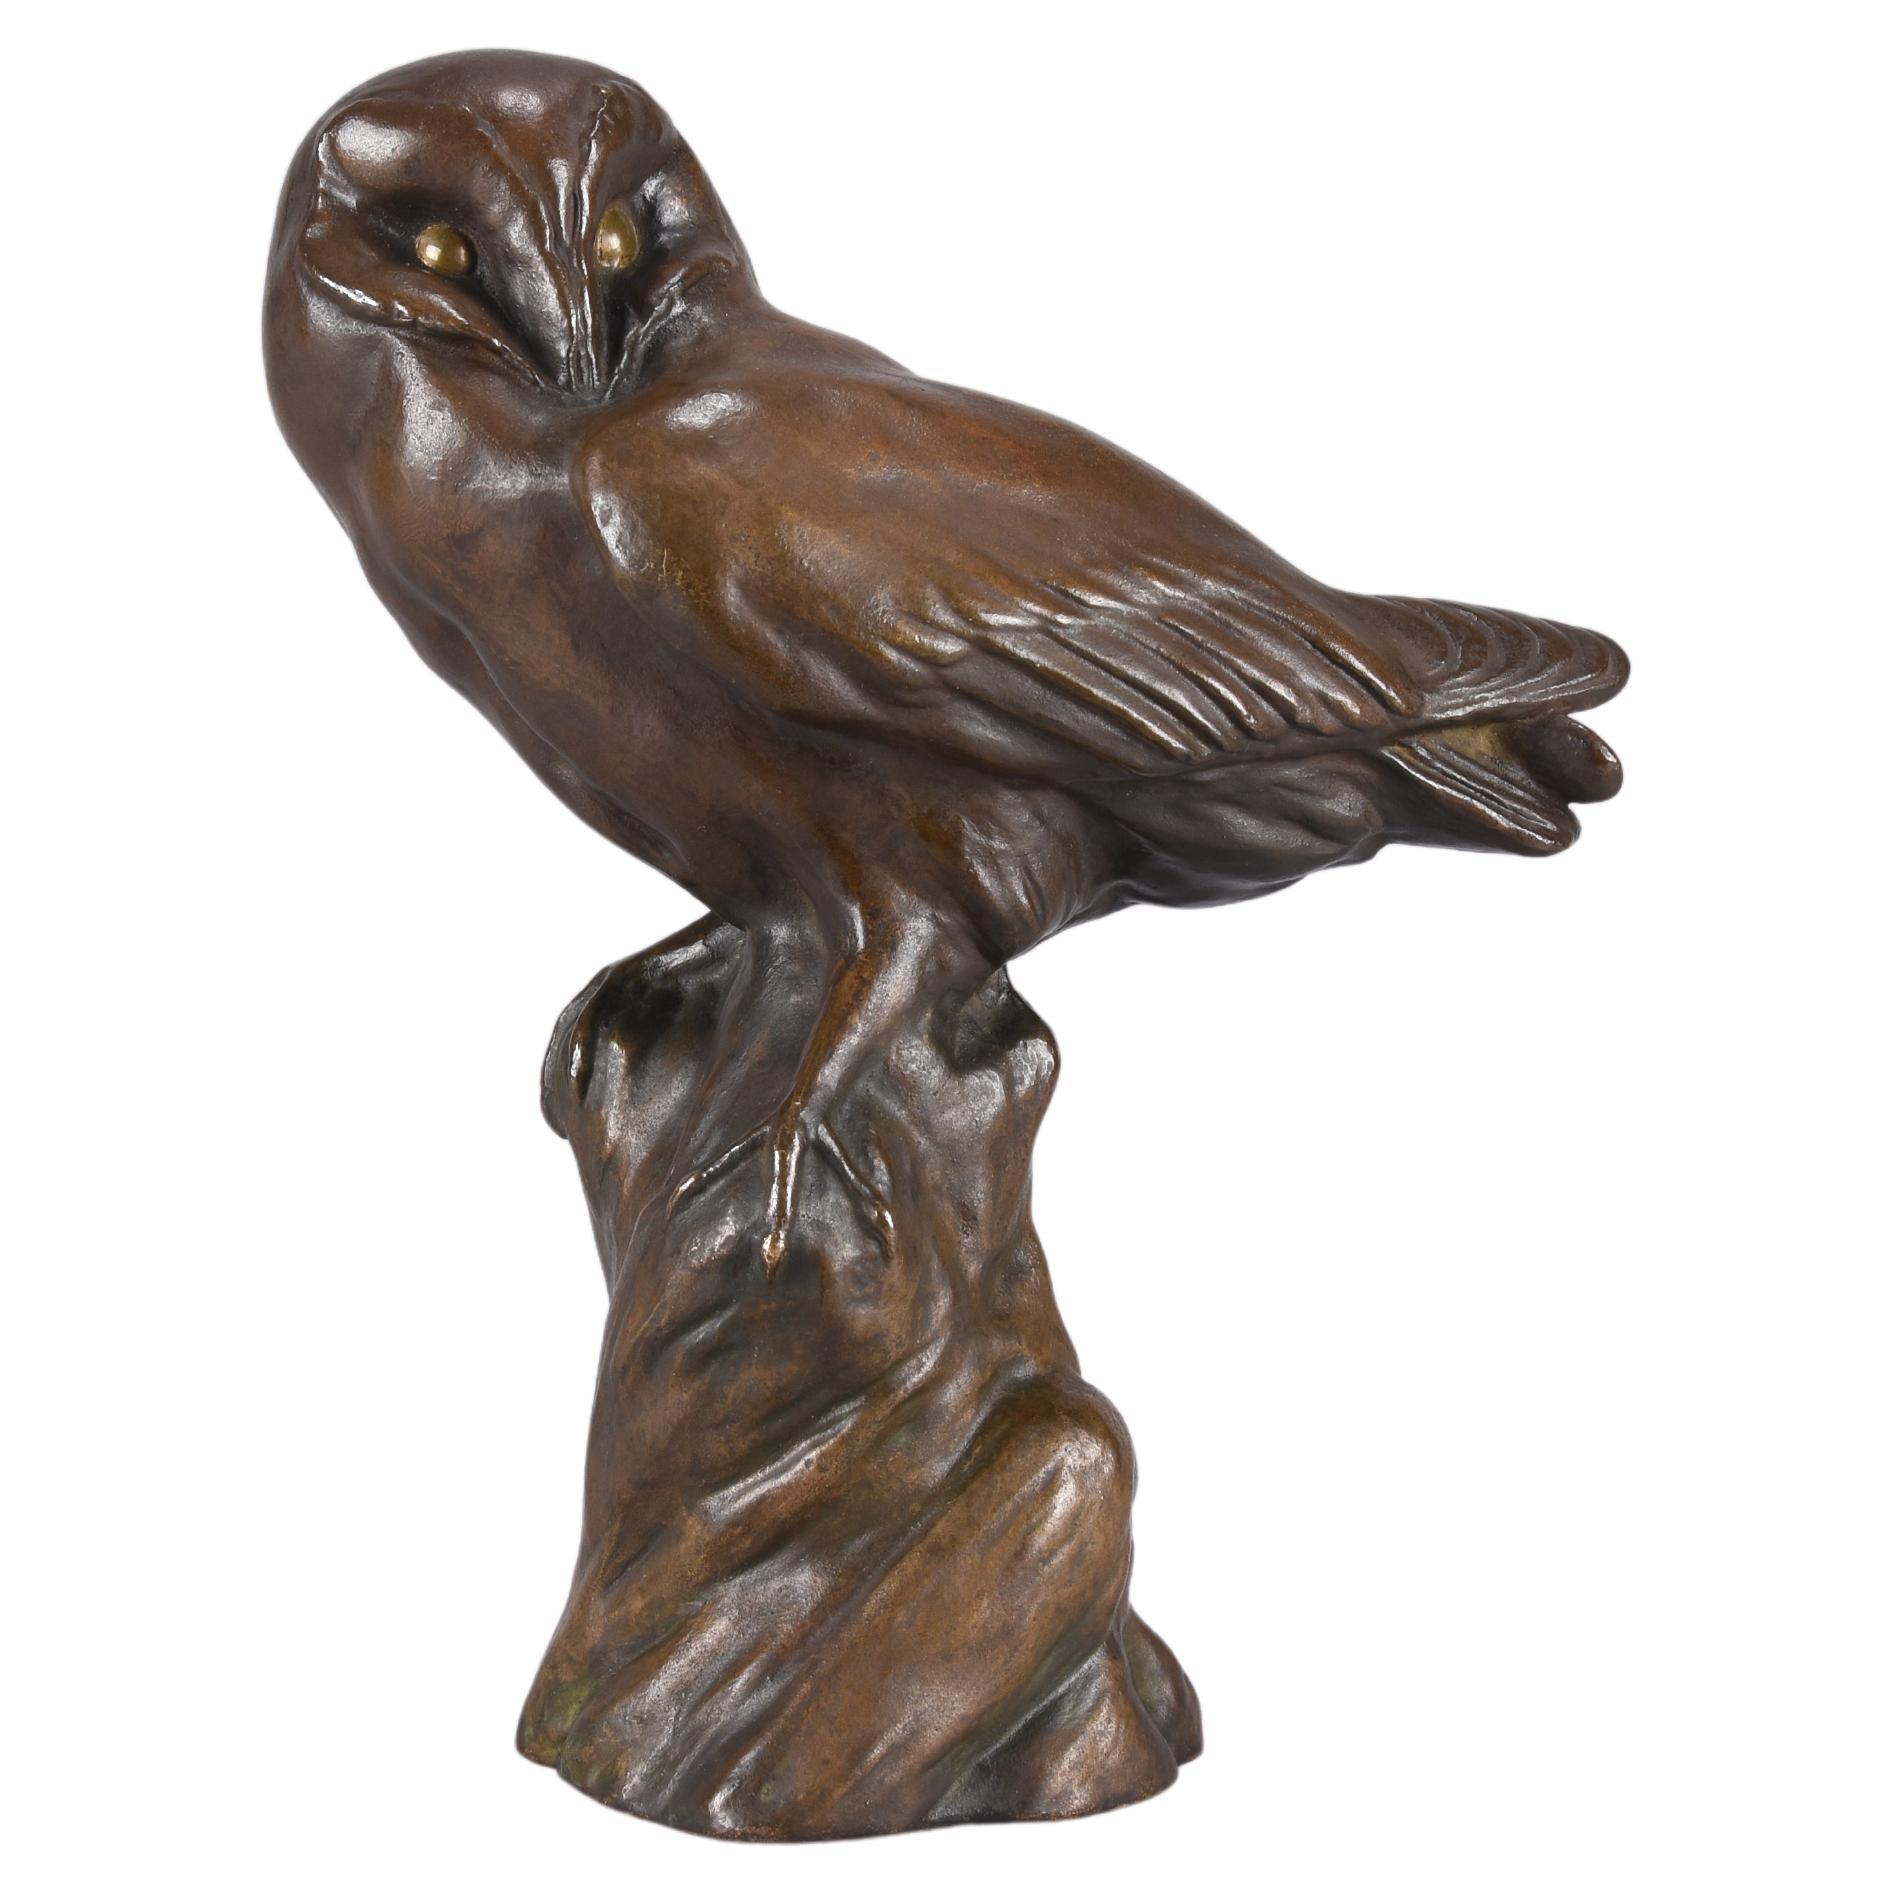 Tierbild des 20. Jahrhunderts „Resting Owl“ von H Sieloff